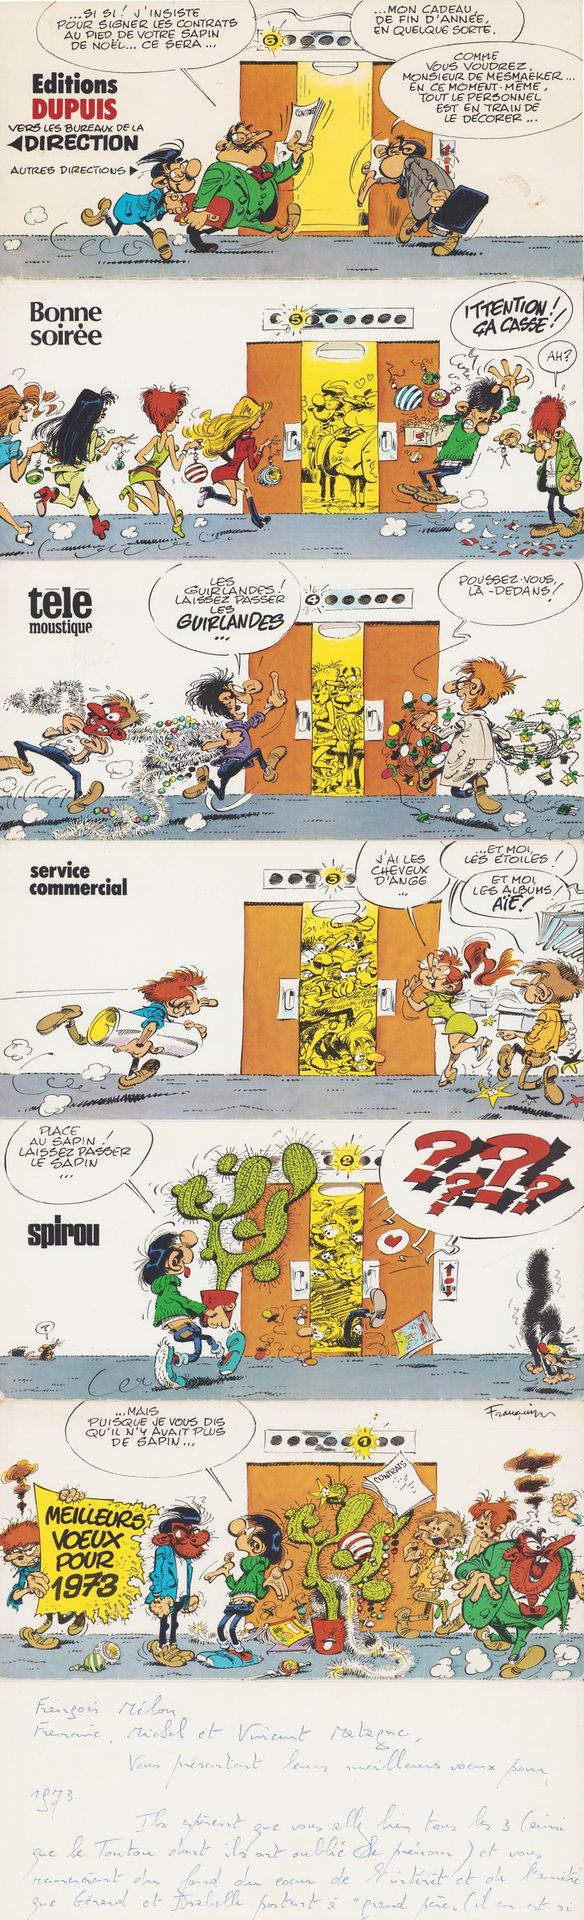 FRANQUIN Gaston. Carte de voeux dépliante 1973 réalisée par les éditions Dupuis.&hellip;